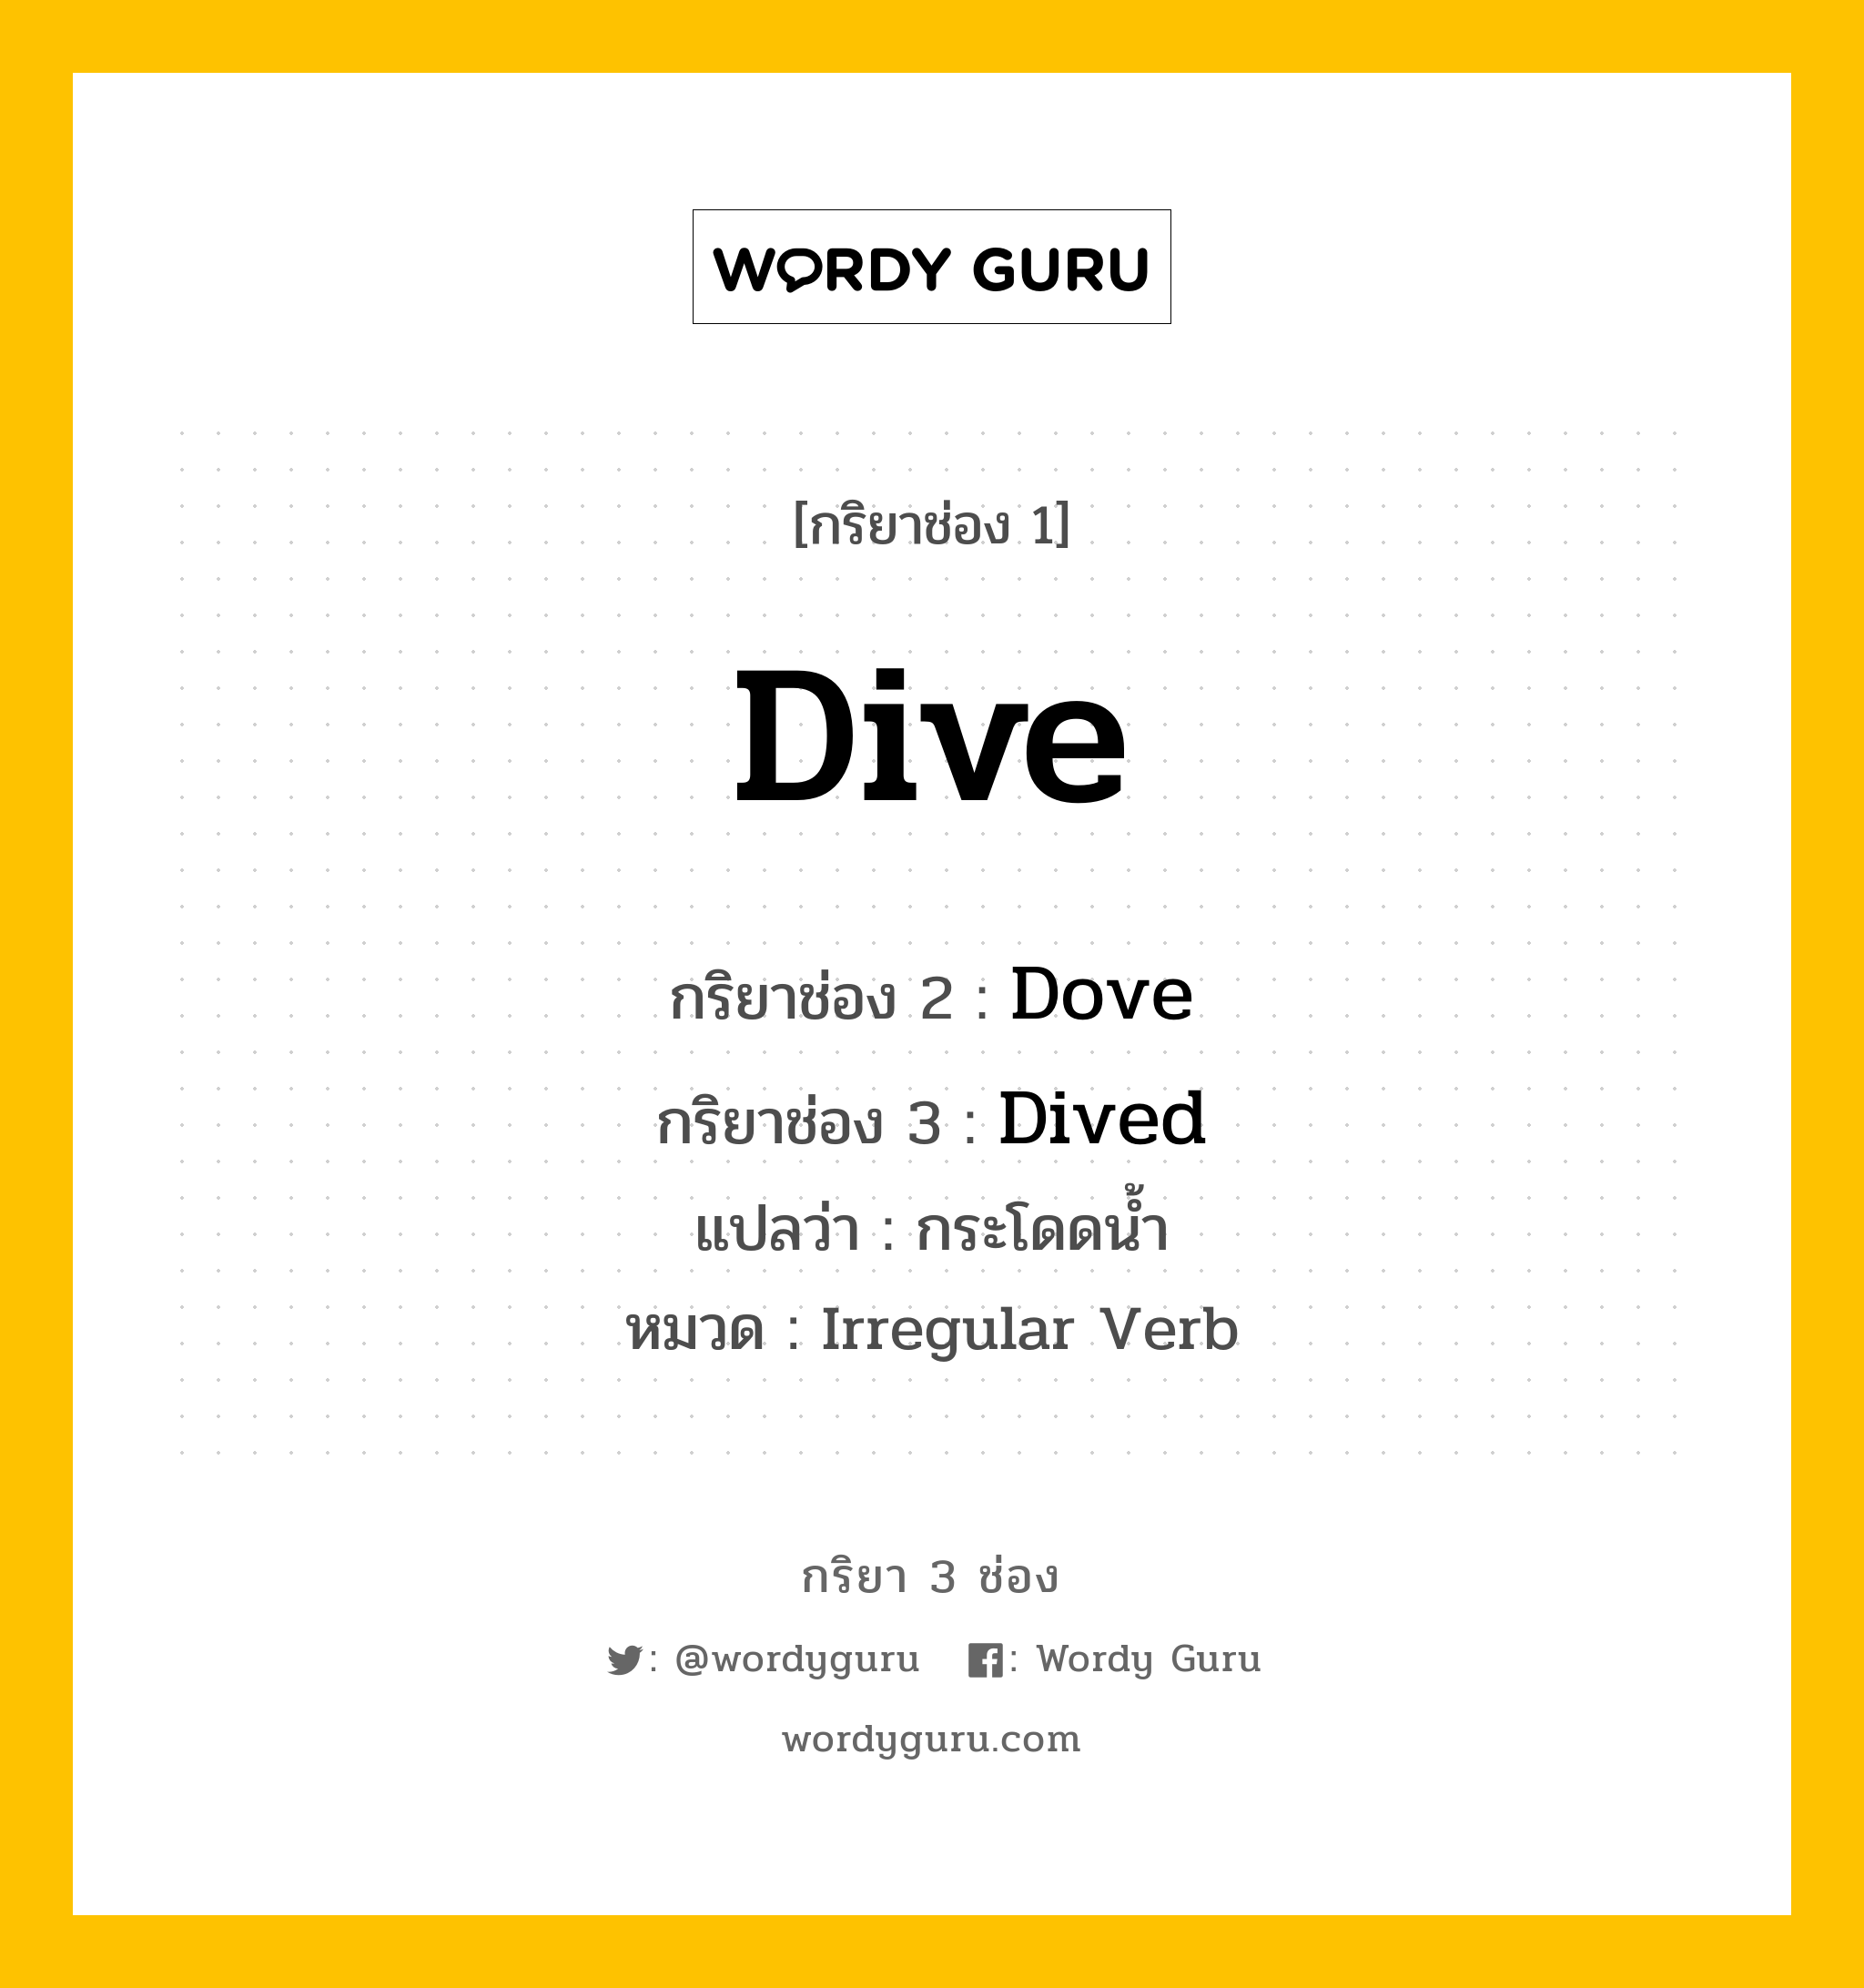 กริยา 3 ช่อง: Dive ช่อง 2 Dive ช่อง 3 คืออะไร, กริยาช่อง 1 Dive กริยาช่อง 2 Dove กริยาช่อง 3 Dived แปลว่า กระโดดน้ำ หมวด Irregular Verb มีหลายแบบ y หมวด Irregular Verb